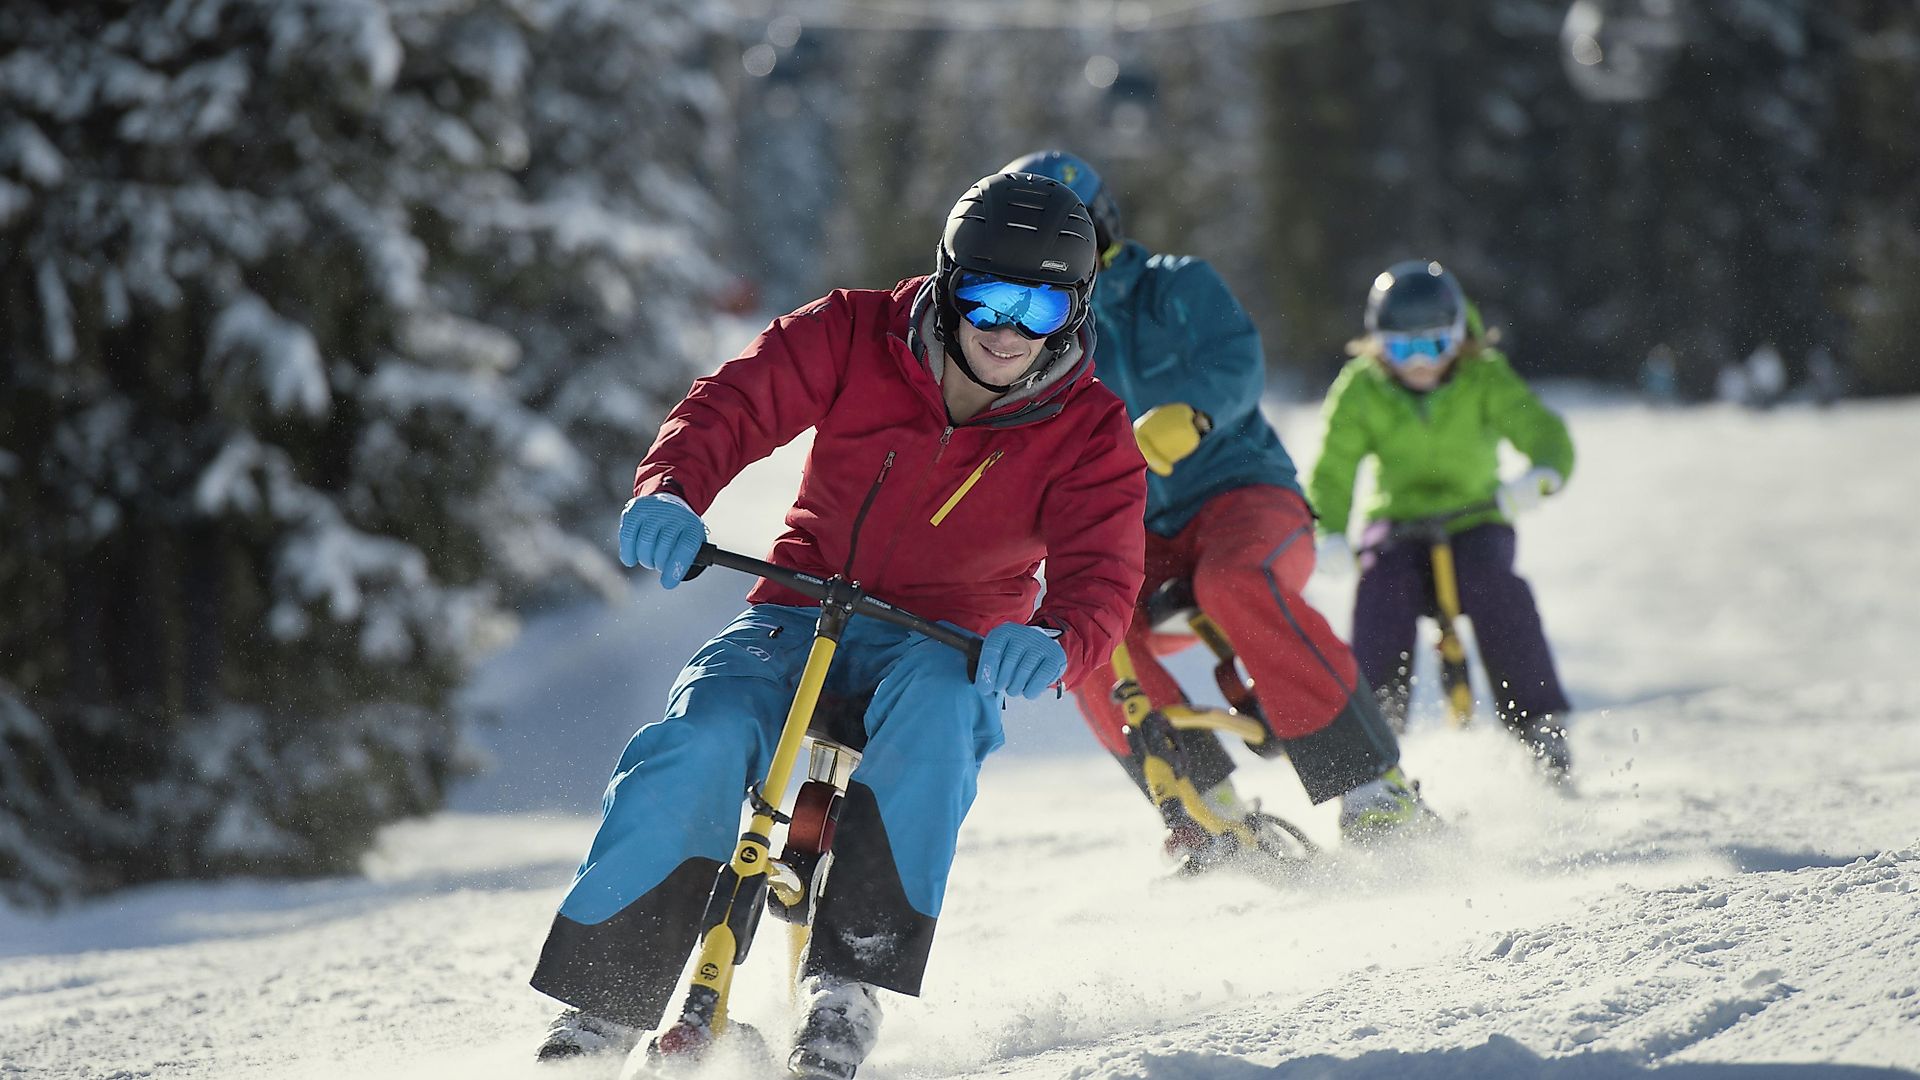 Action und Spaß im Schnee - Snowbiken und Ski-Doo-Fahren sind leichter als  gedacht